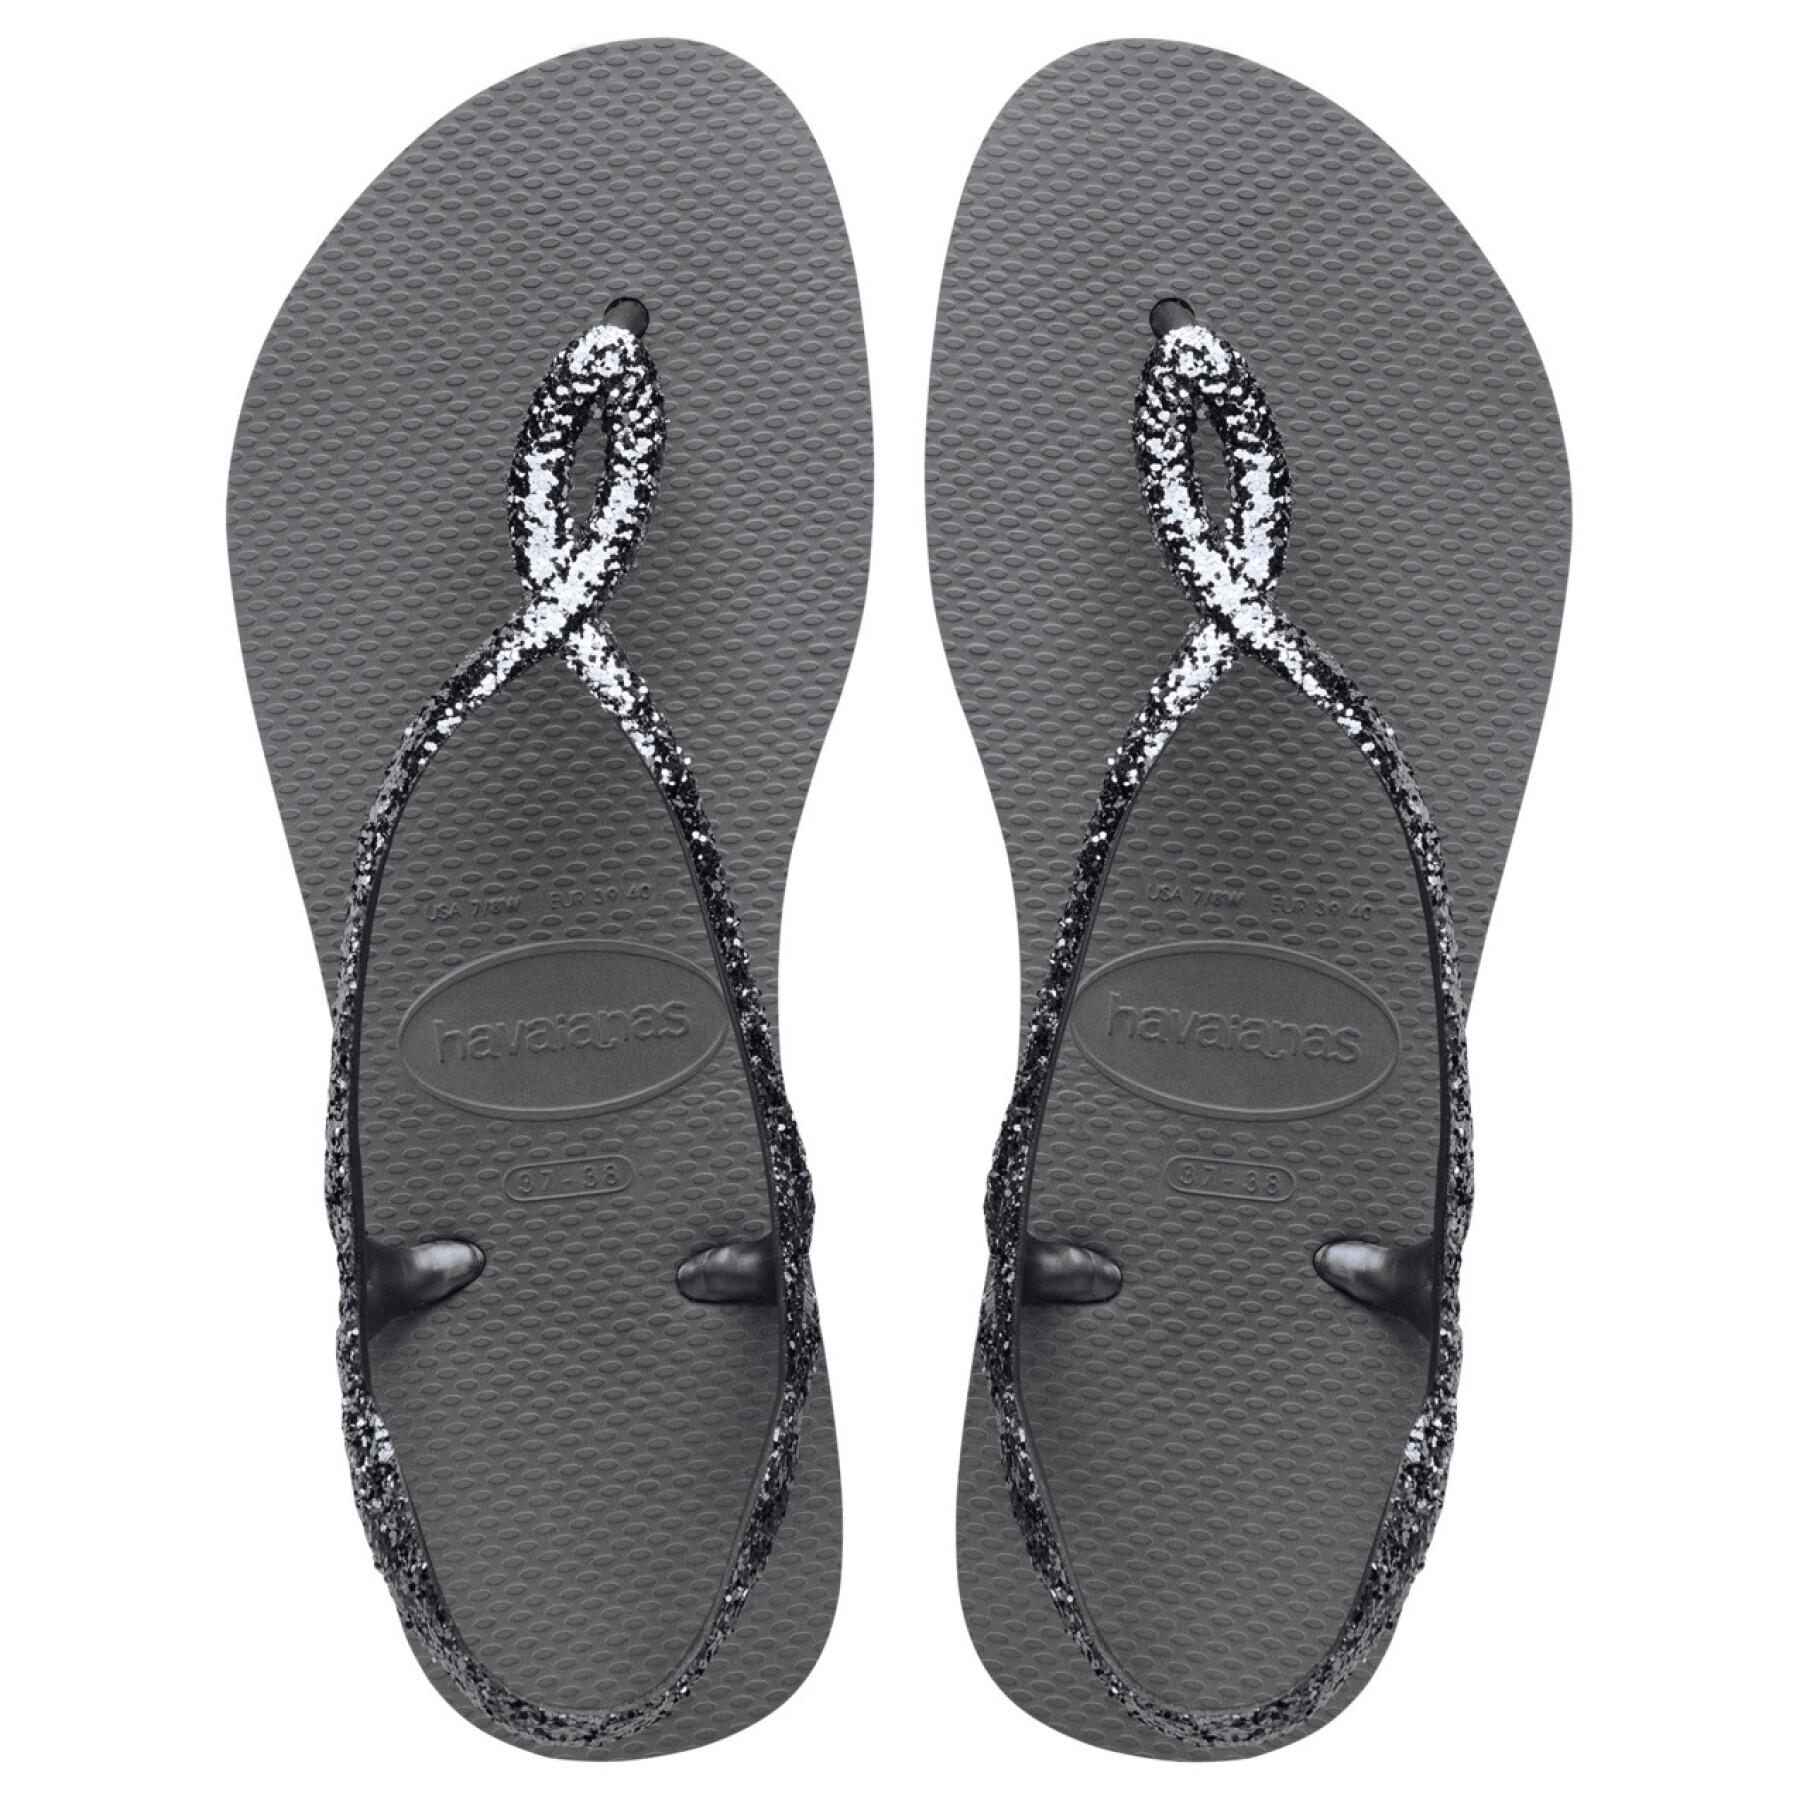 Women's sandals Havaianas Luna Premium II